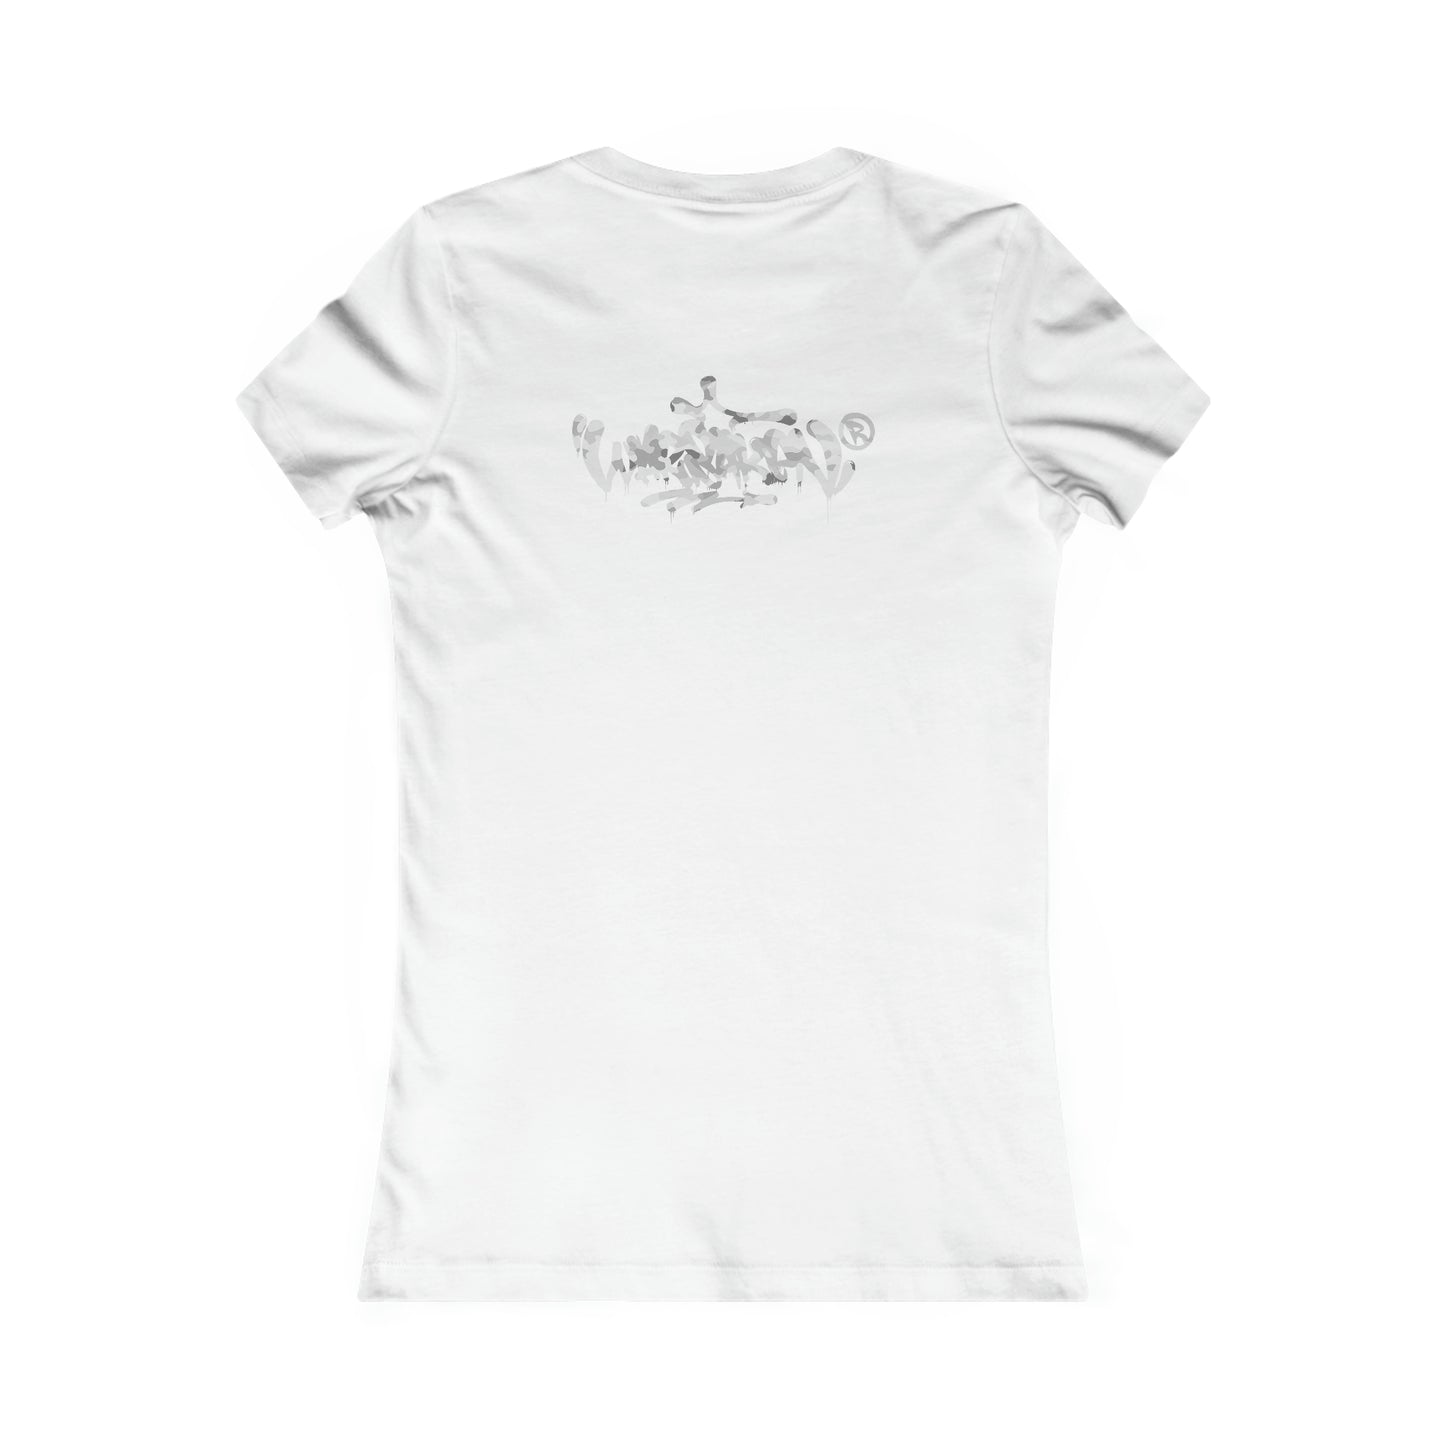 Women's Warsaken® T-Shirt : Stealth Mode